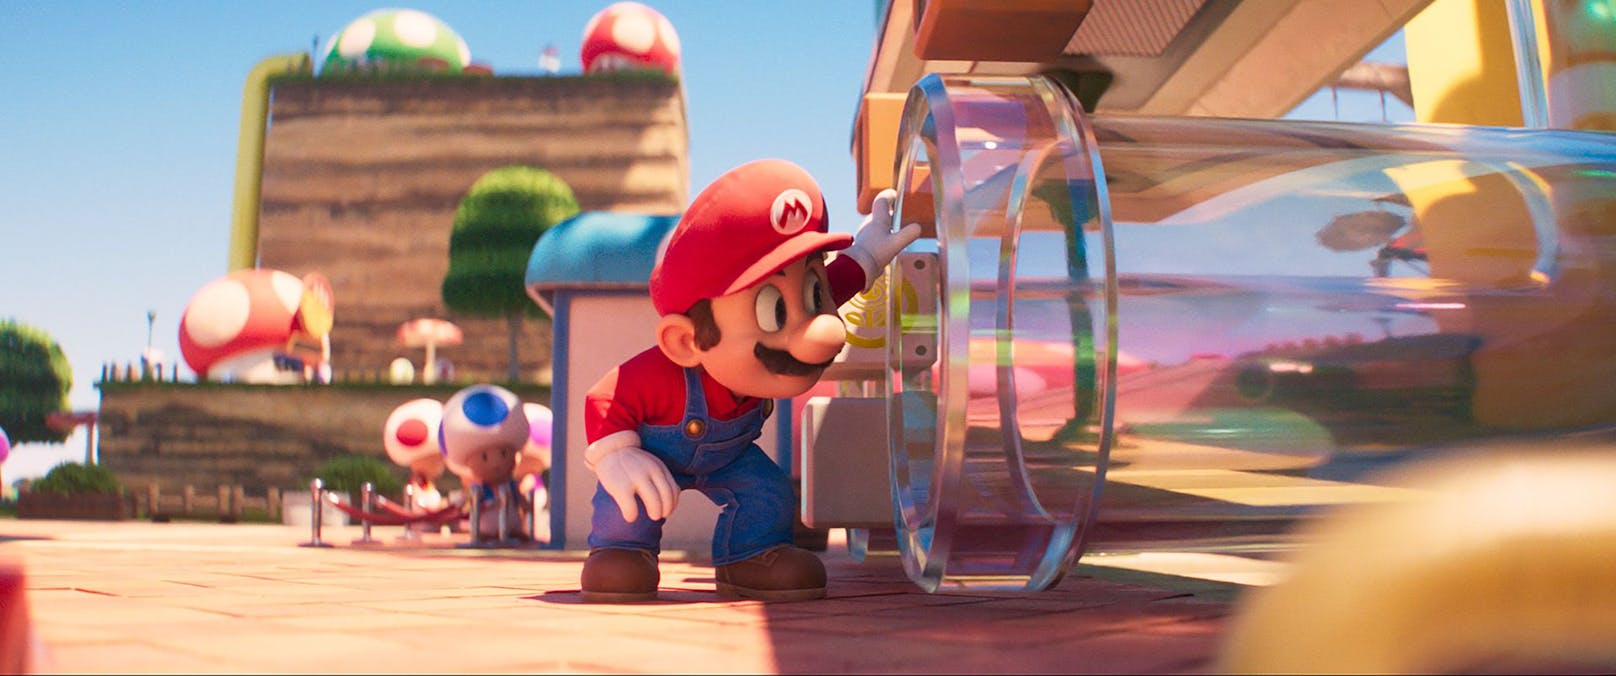 Toad führt Mario durch das Pilzkönigreich zum Palast der Prinzessin.